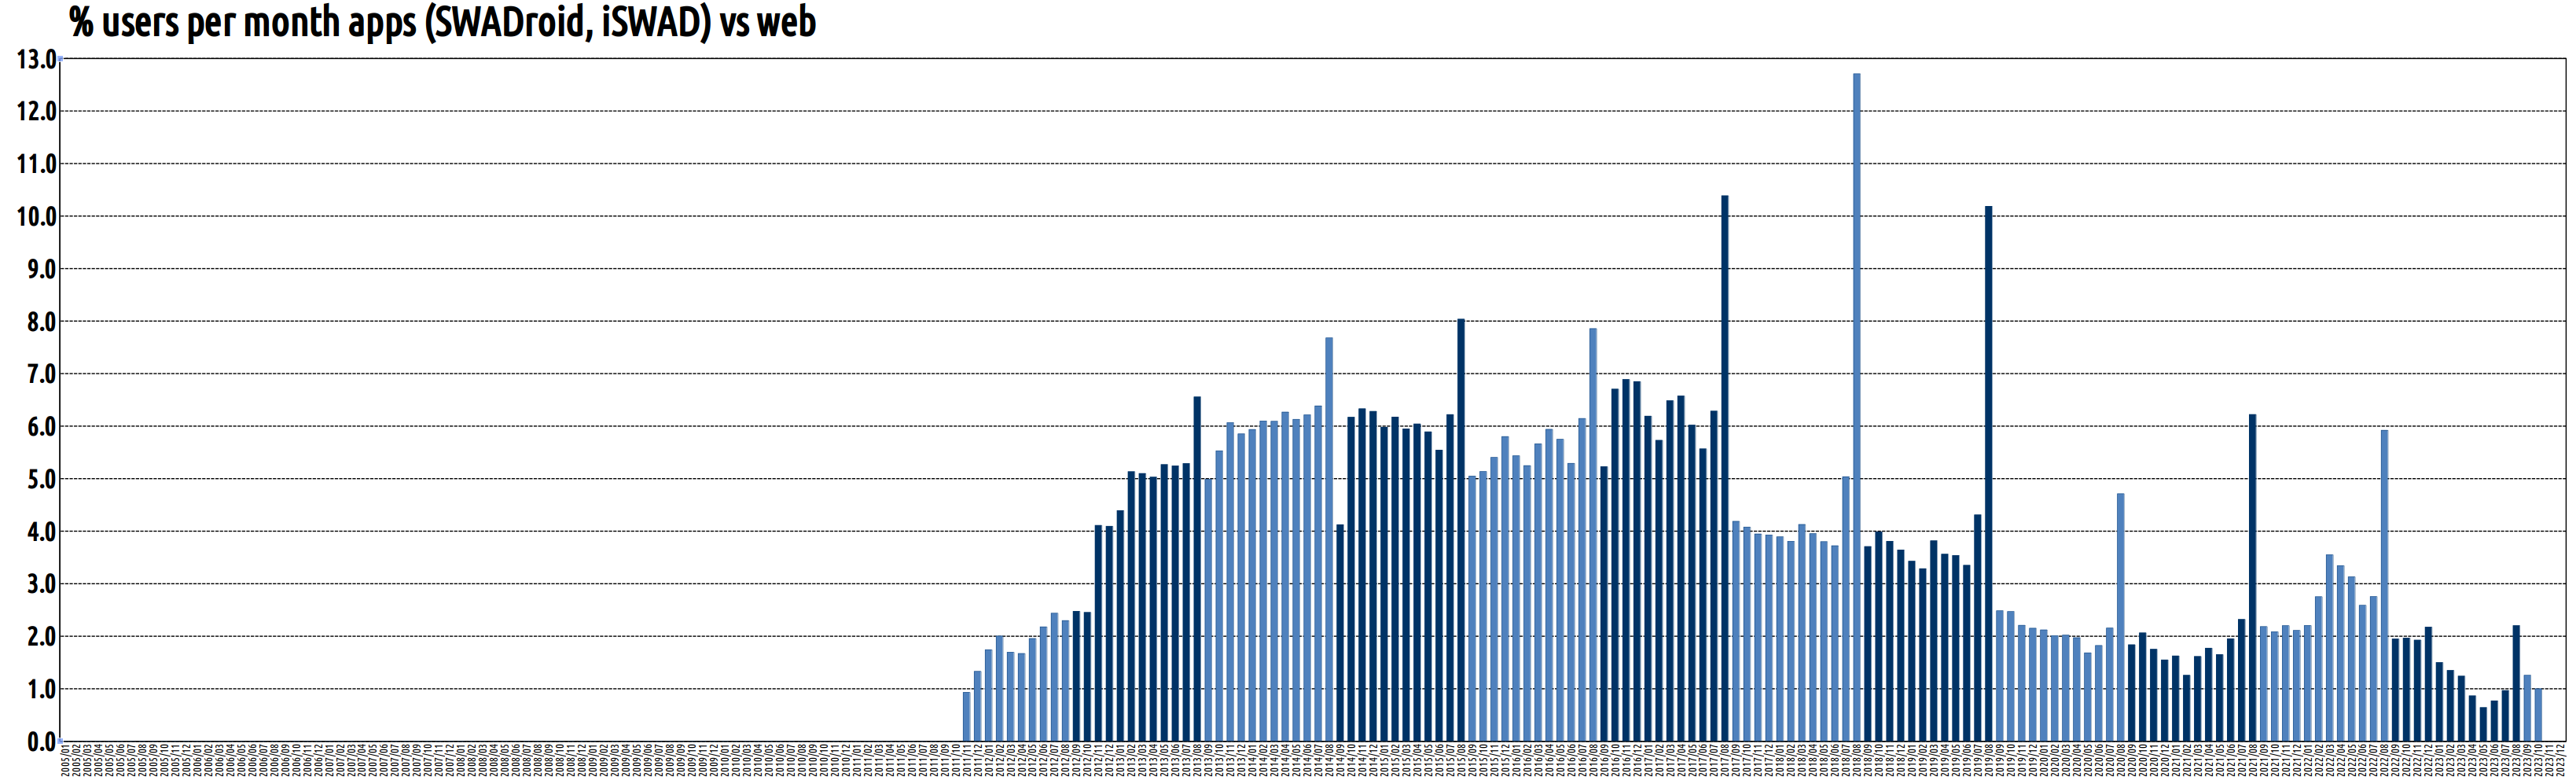 Porcentaje de usuarios distintos por mes desde SWADroid